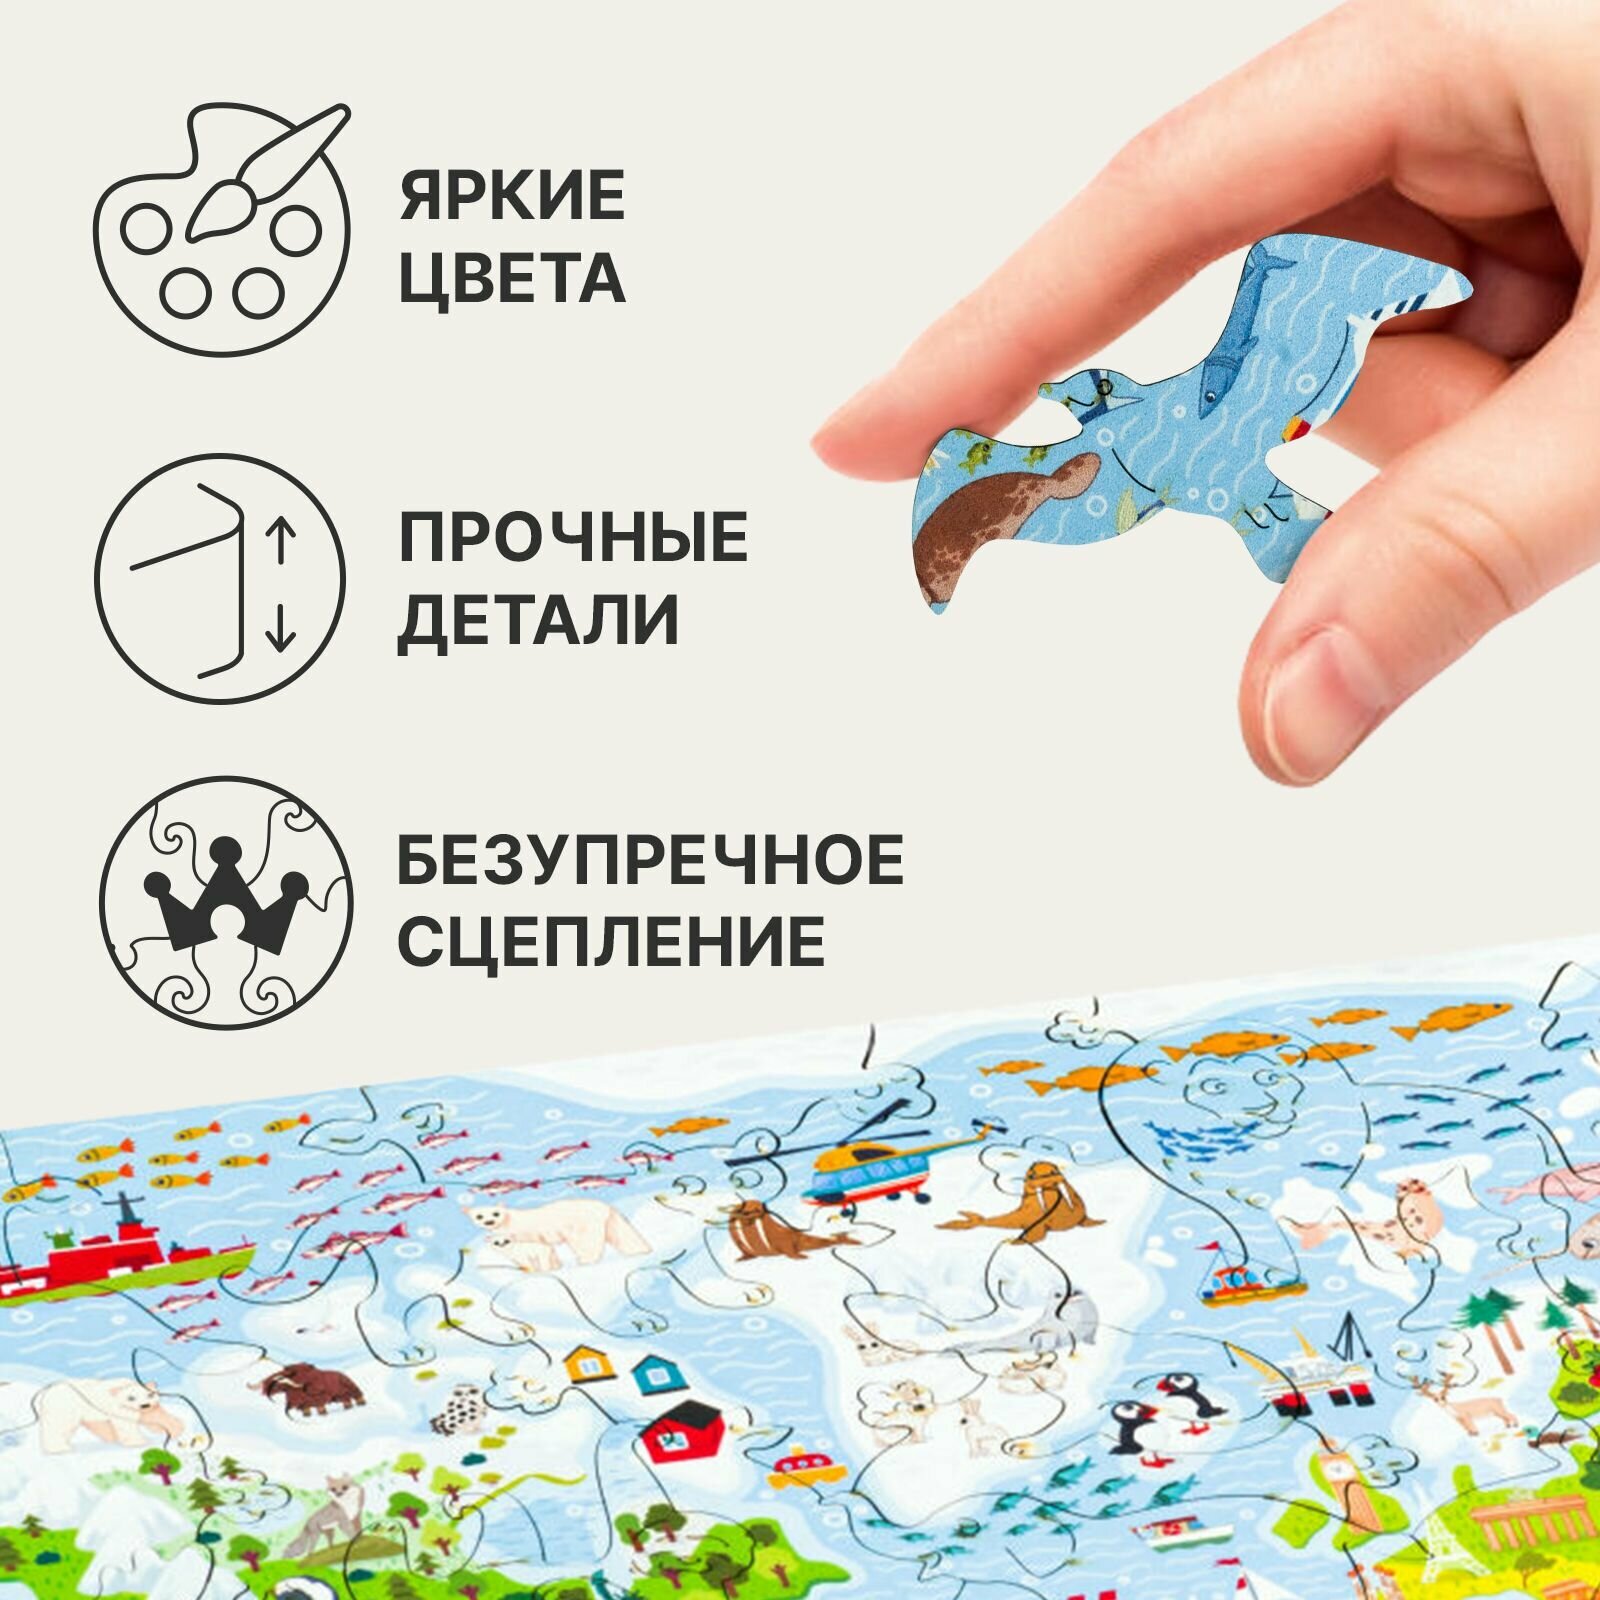 Деревянный пазл для детей UNIDRAGON Детская Карта Мира 43.1 x 29.7 см, 100 деталей